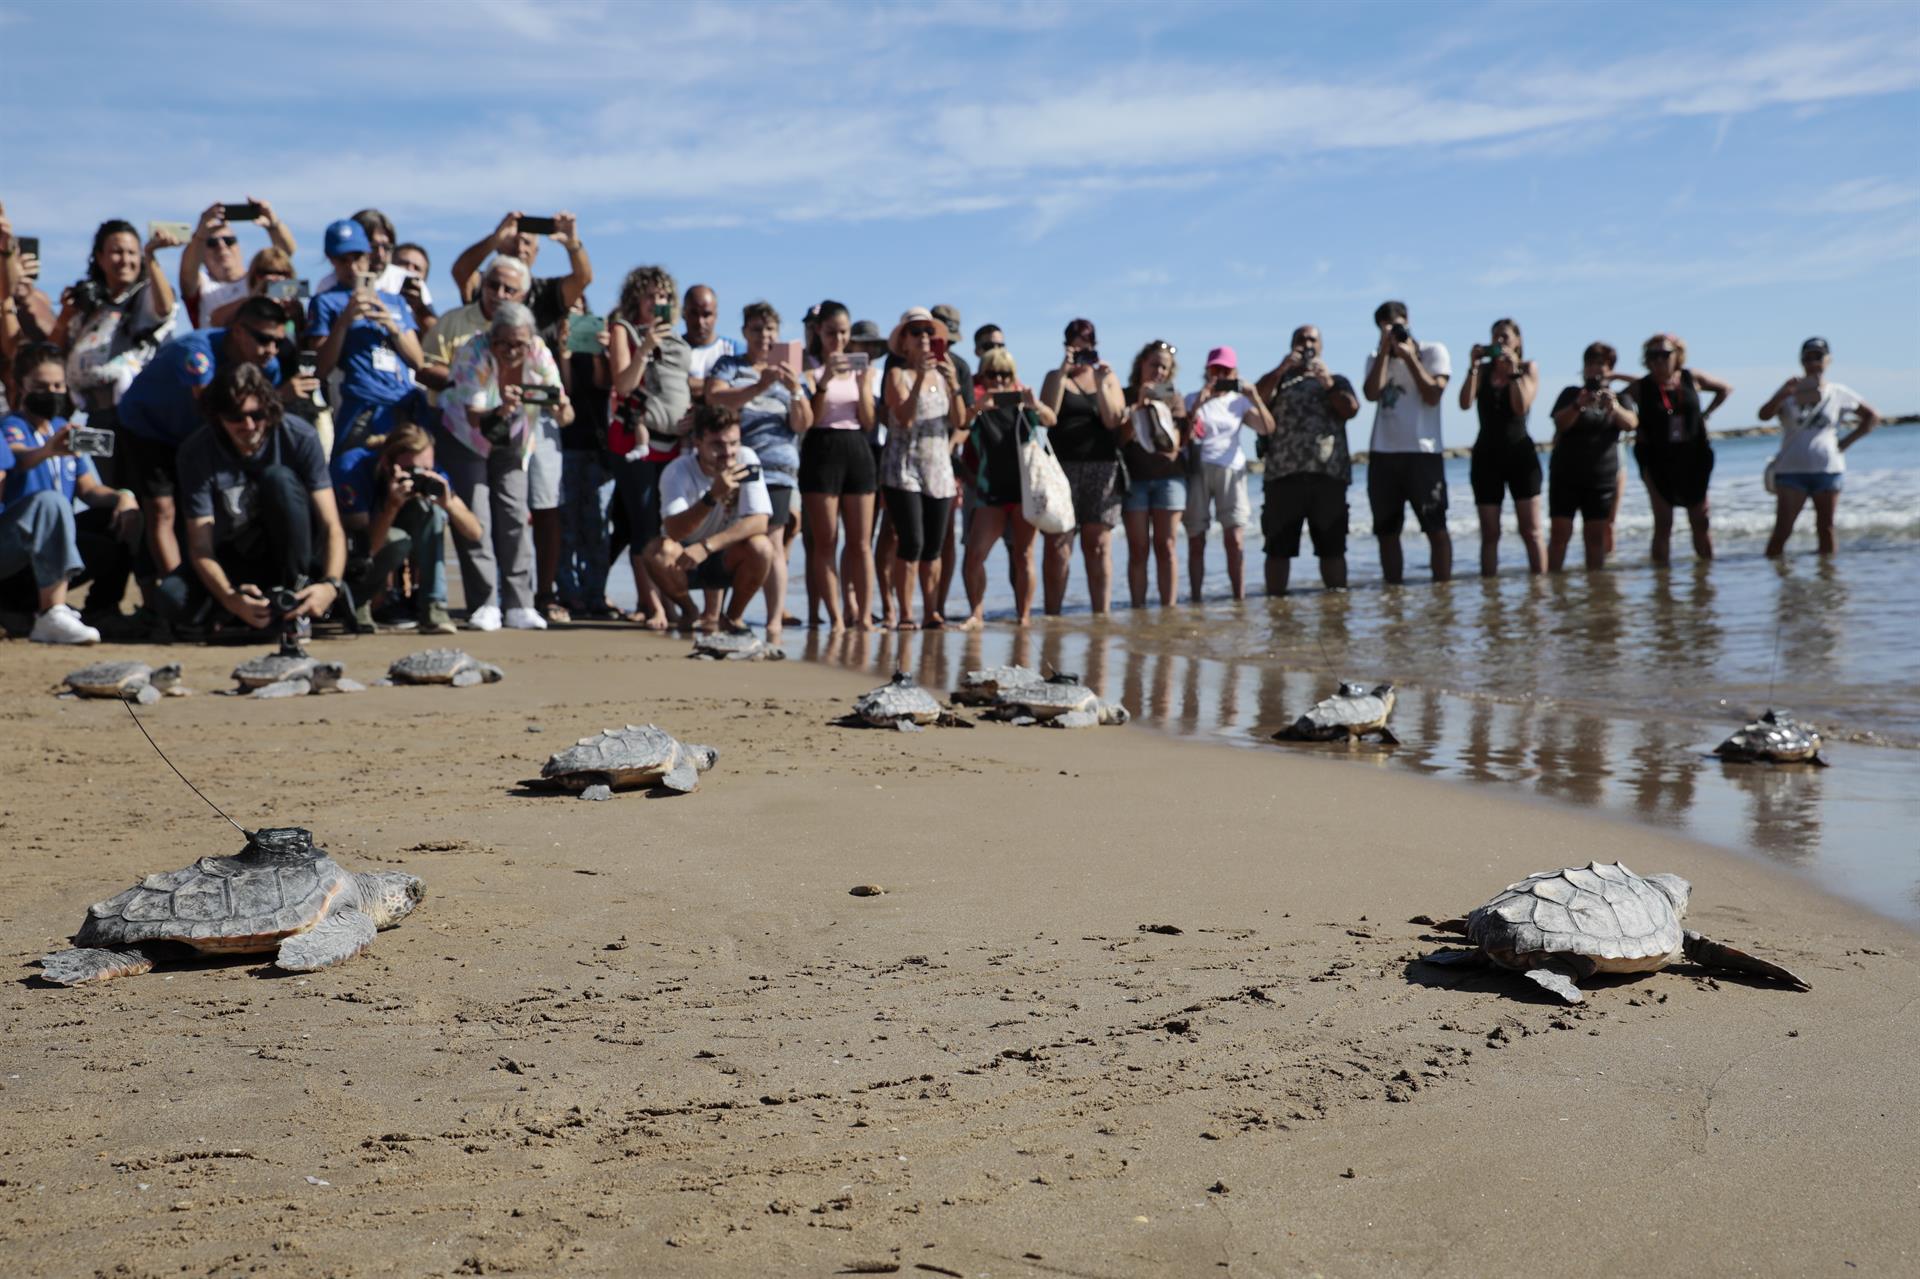 Las catorce tortugas nacidas del nido hallado en El Puig el pasado verano vuelven al mar. Como parte del programa “Head-starting”, de la Fundación Oceanogràfic, siete de ellas llevarán instalado un dispositivo satelital que permitirá realizar un seguimiento monitorizado de la trayectoria y ampliar el conocimiento sobre su biología una vez vuelvan al agua. EFE/ Ana Escobar